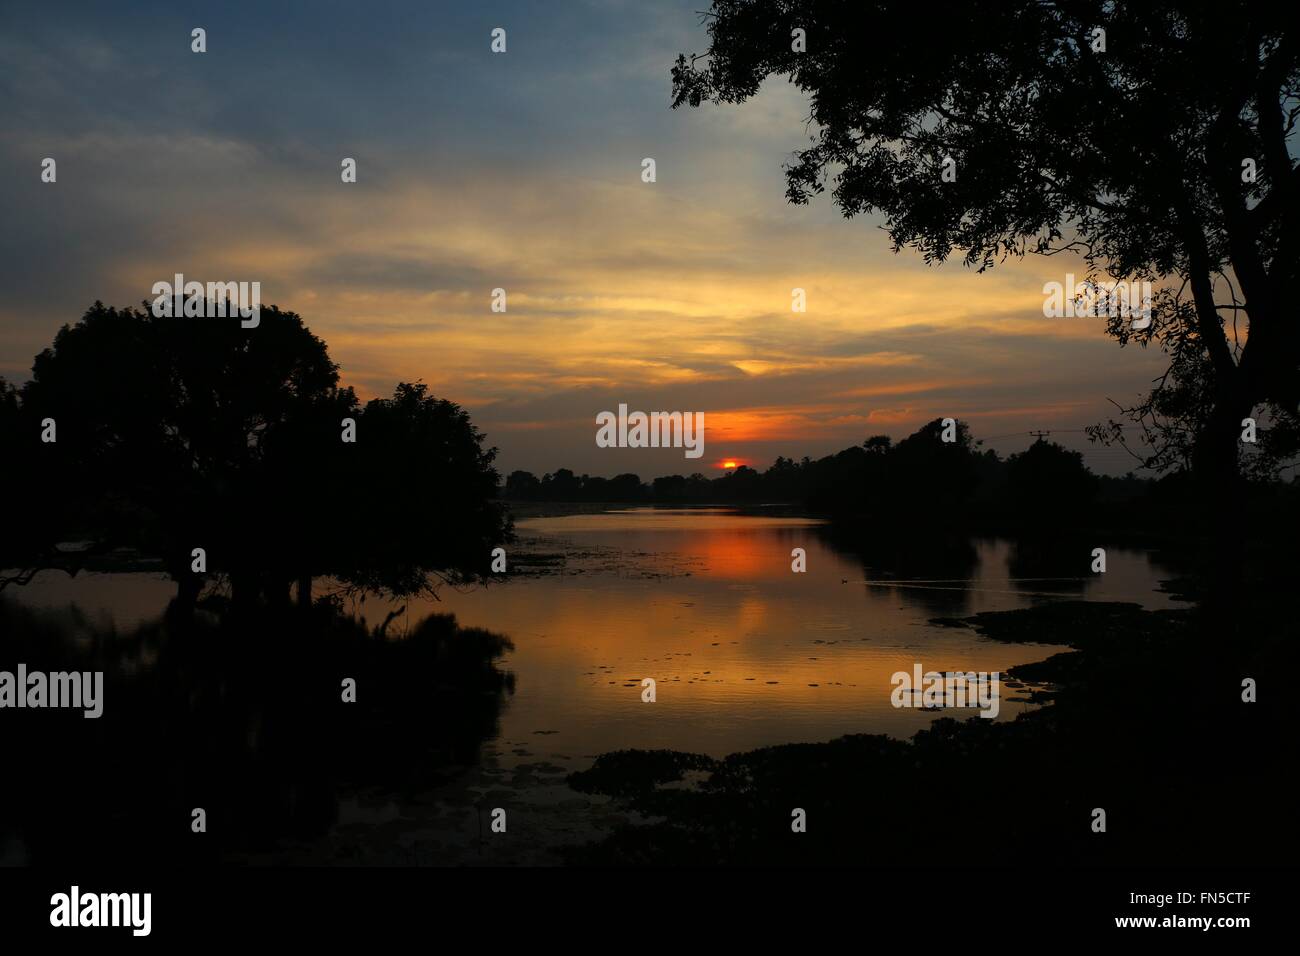 Impresionante puesta de sol sobre el lago Foto de stock